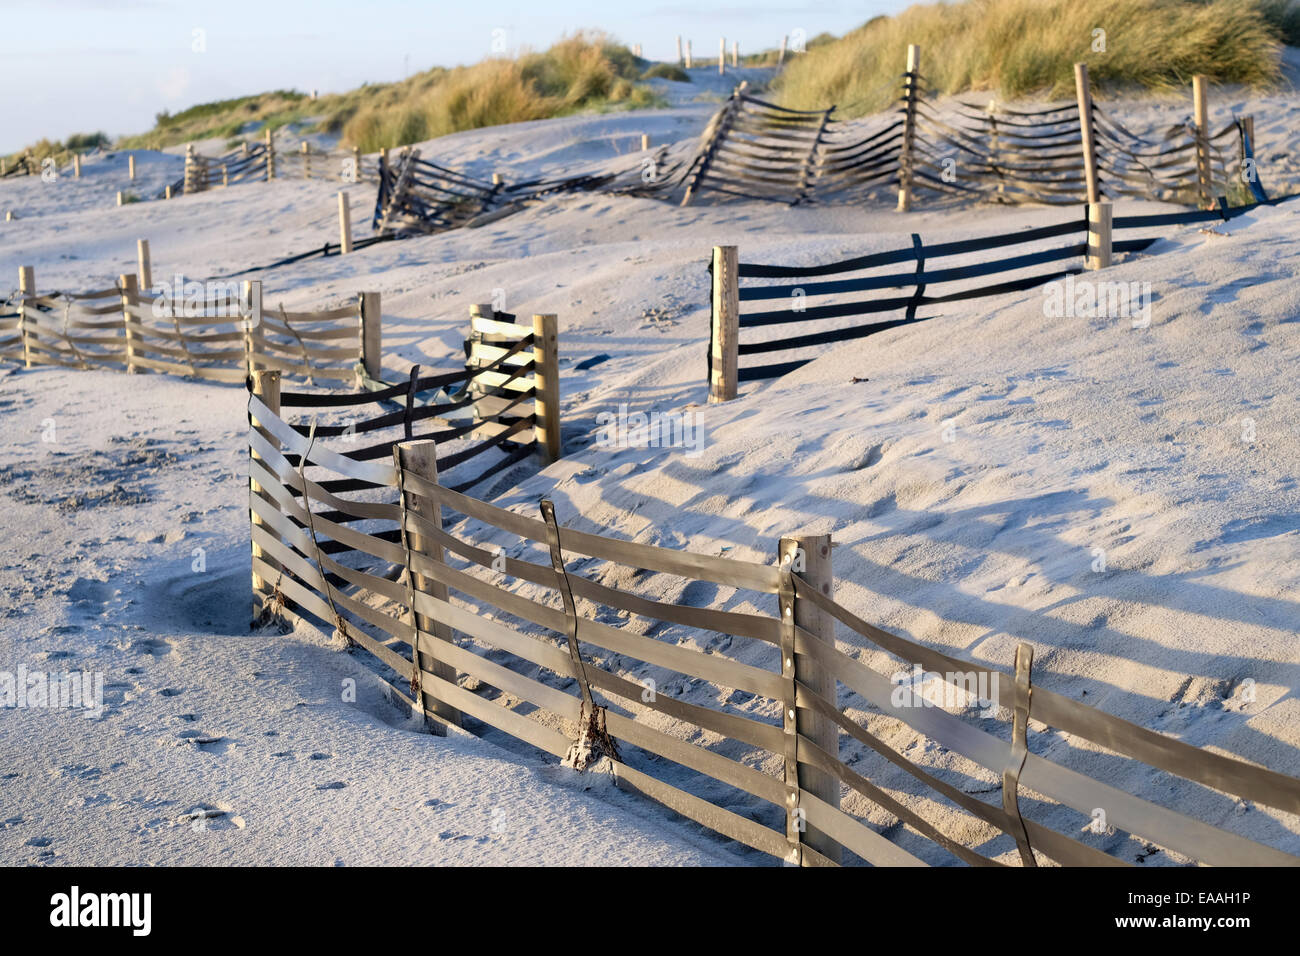 Inglaterra, Sussex, West Wittering. Sand vallas diseñados para estabilizar las dunas forman parte del sistema de defensa costera. Foto de stock